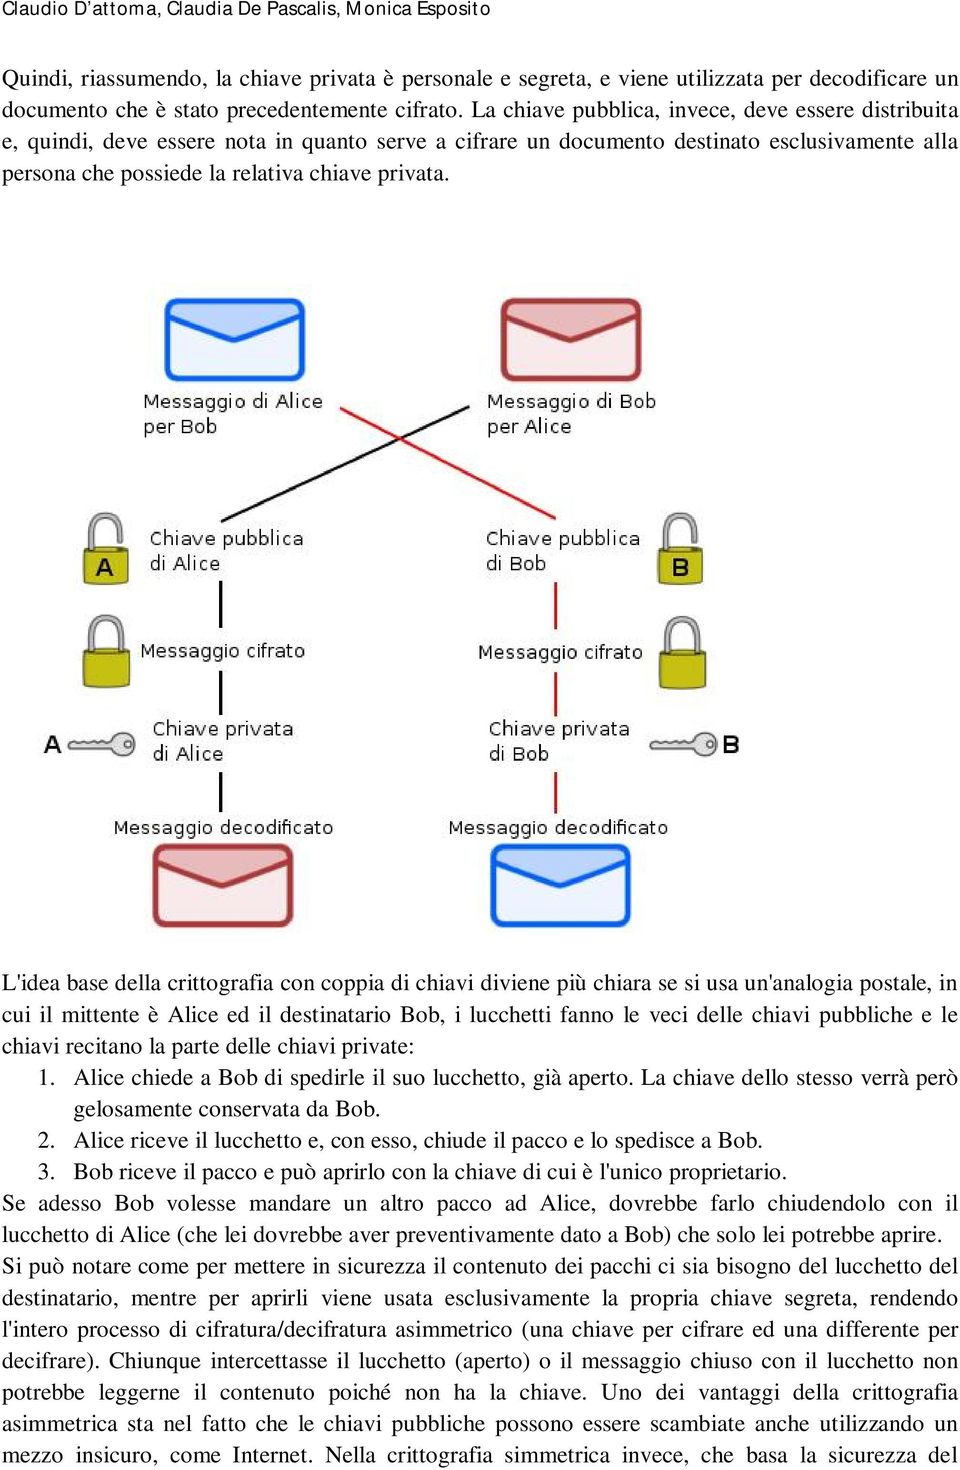 L'idea base della crittografia con coppia di chiavi diviene più chiara se si usa un'analogia postale, in cui il mittente è Alice ed il destinatario Bob, i lucchetti fanno le veci delle chiavi